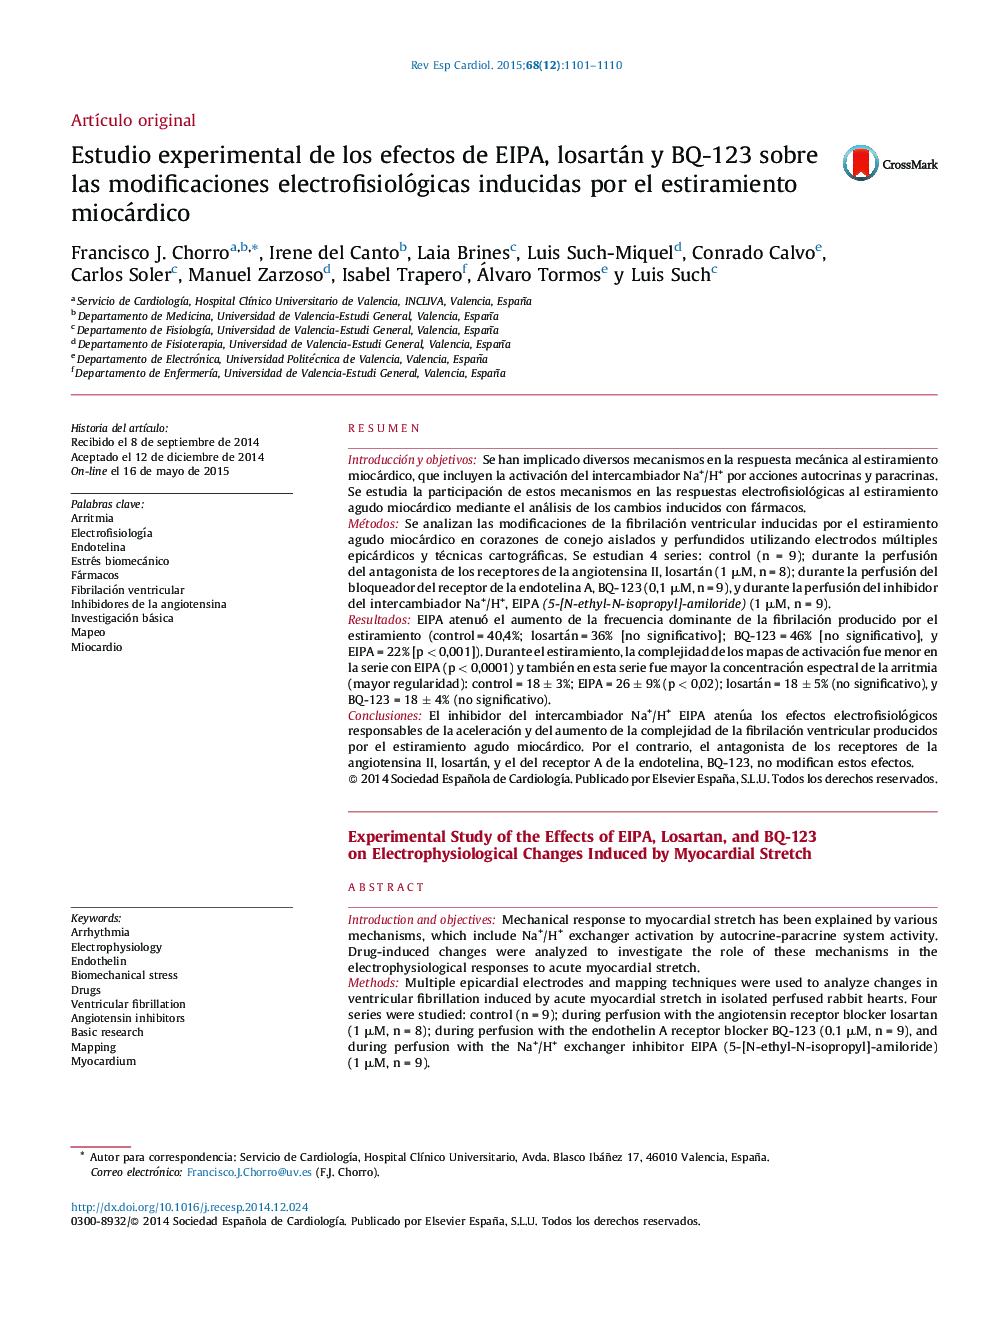 Estudio experimental de los efectos de EIPA, losartán y BQ-123 sobre las modificaciones electrofisiológicas inducidas por el estiramiento miocárdico